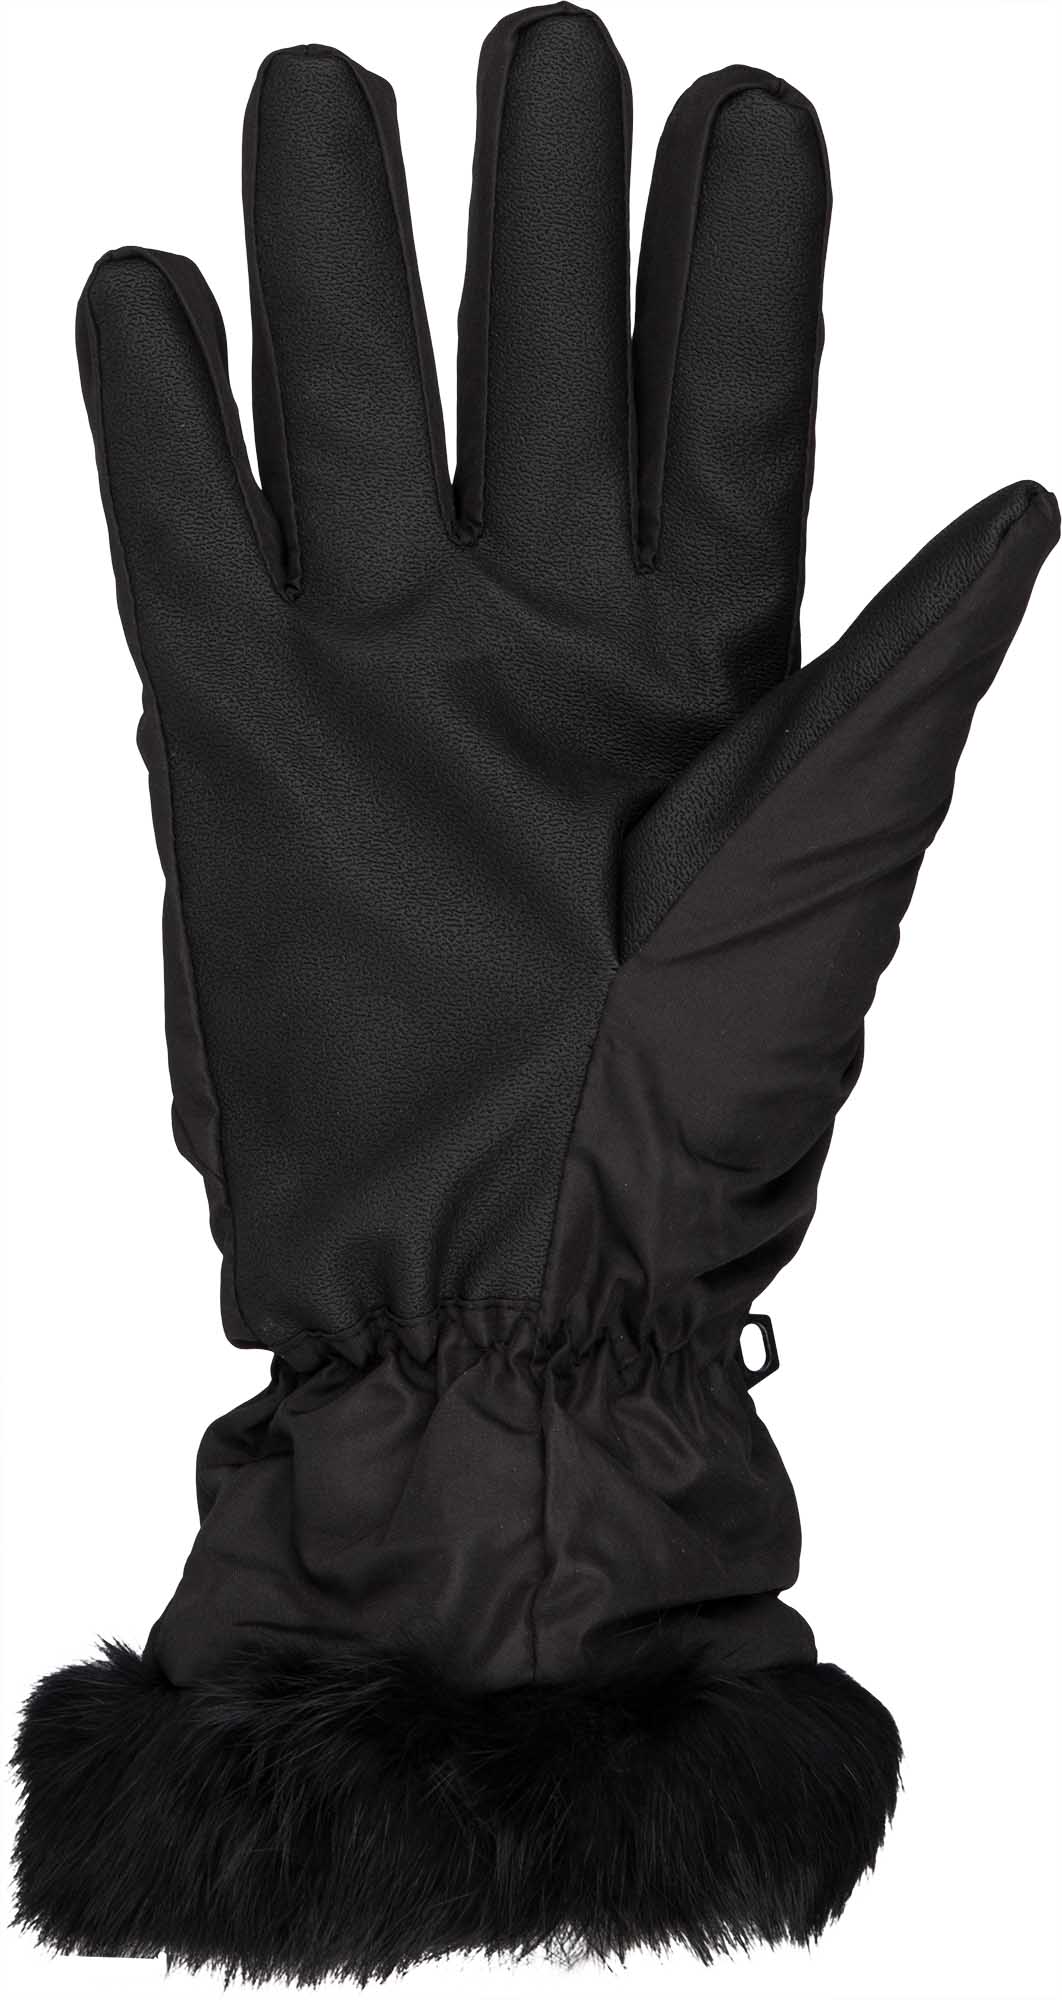 Дамски ръкавици